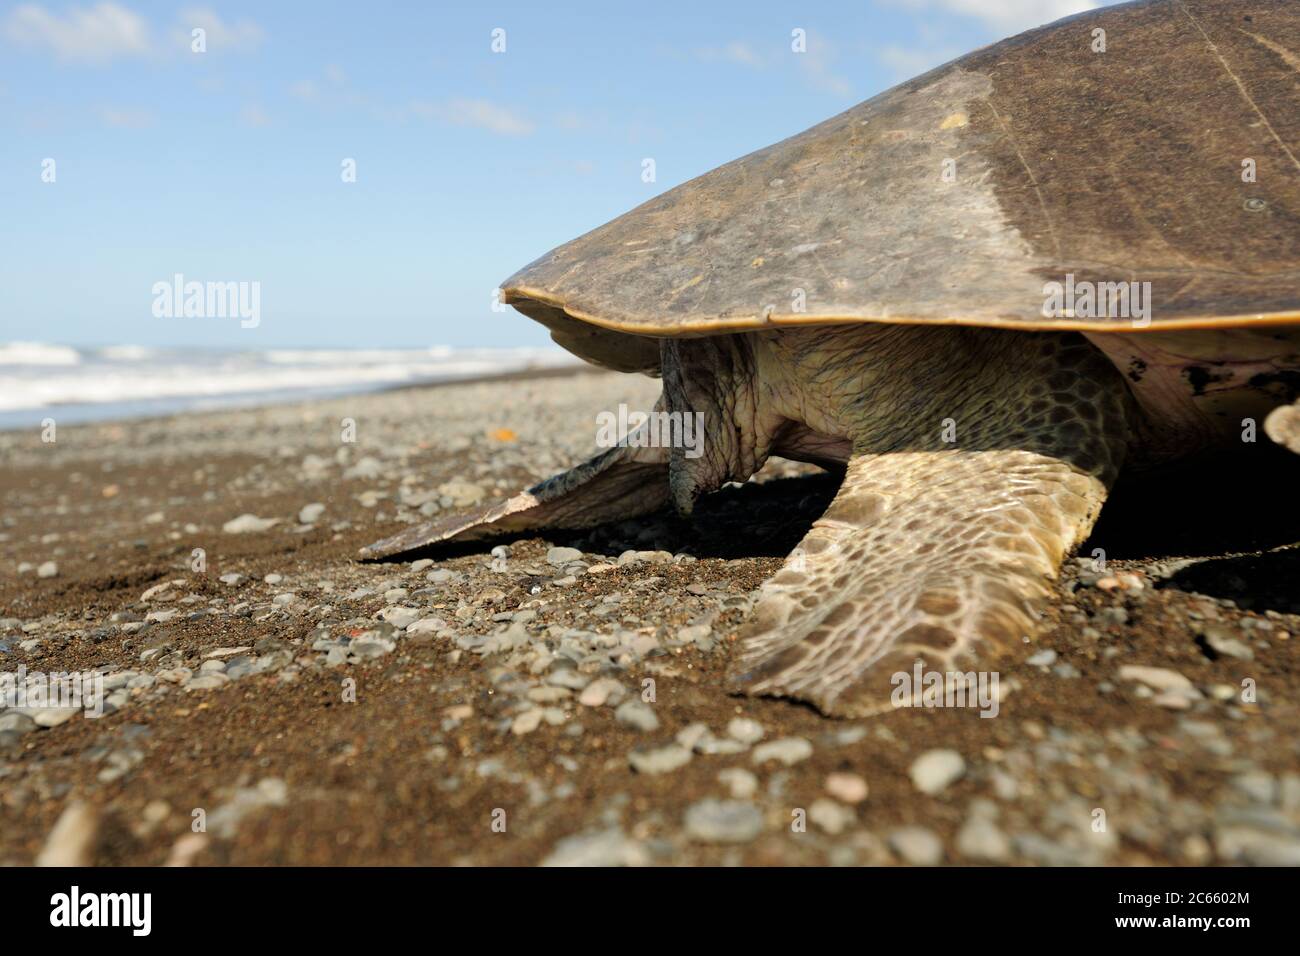 En regardant une tortue de mer mature comme cette olive ridley (Lepidochelys olivacea) on peut facilement dire le sexe: Une femelle a une queue courte, comme on l'a vu ici, alors qu'un mâle a une queue longue et musclée qui dépasse clairement le bord de la carapace. Banque D'Images